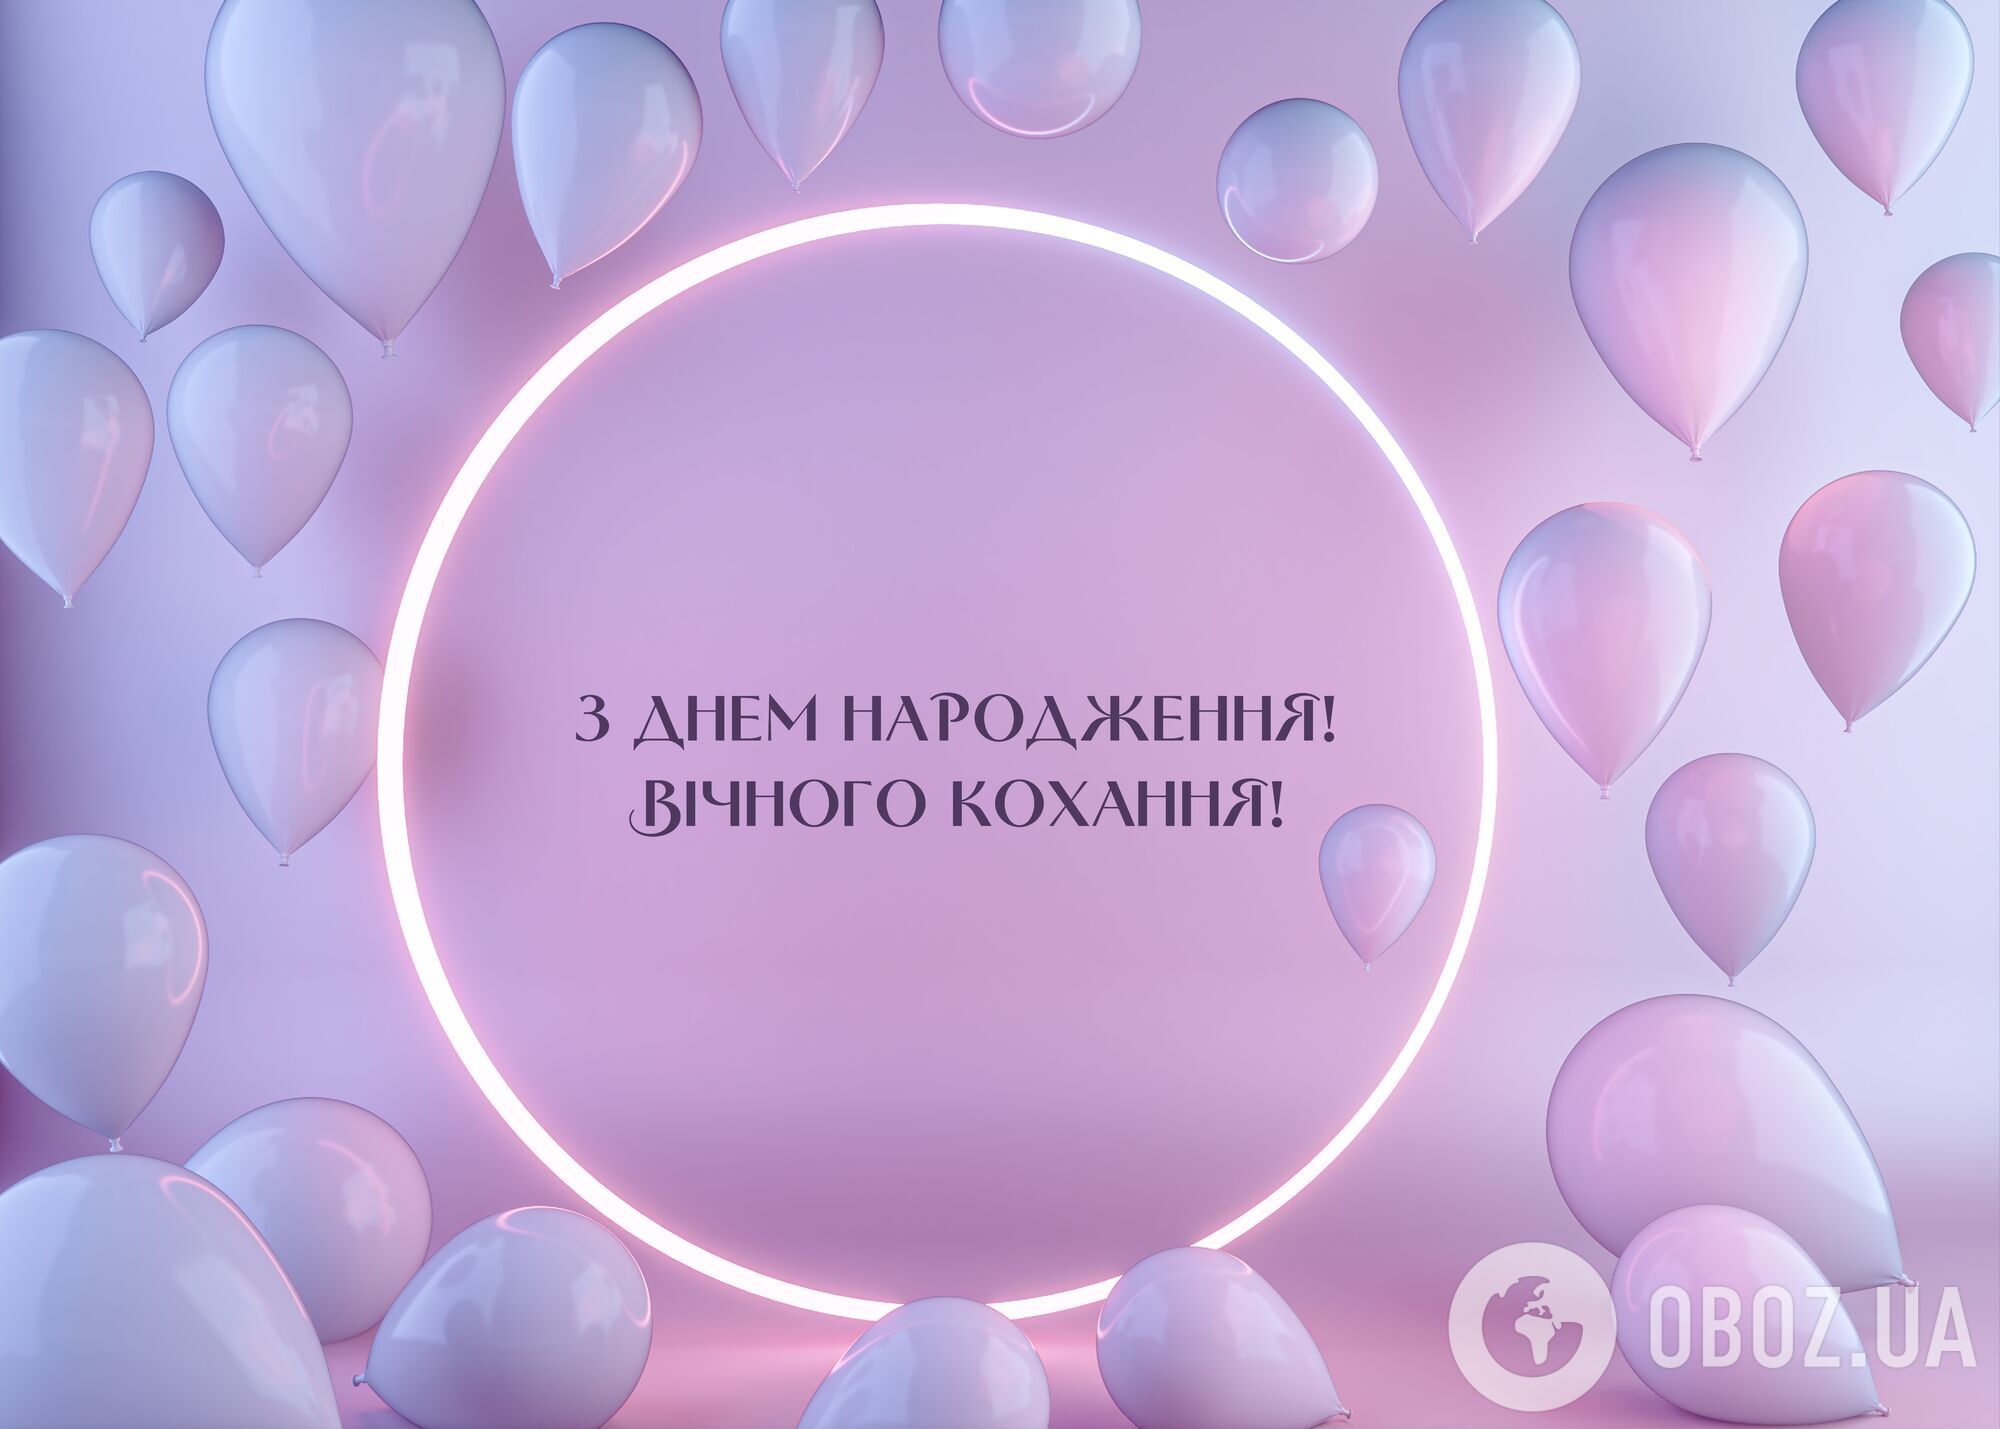 Лучшие поздравления с днем рождения на украинском: картинки